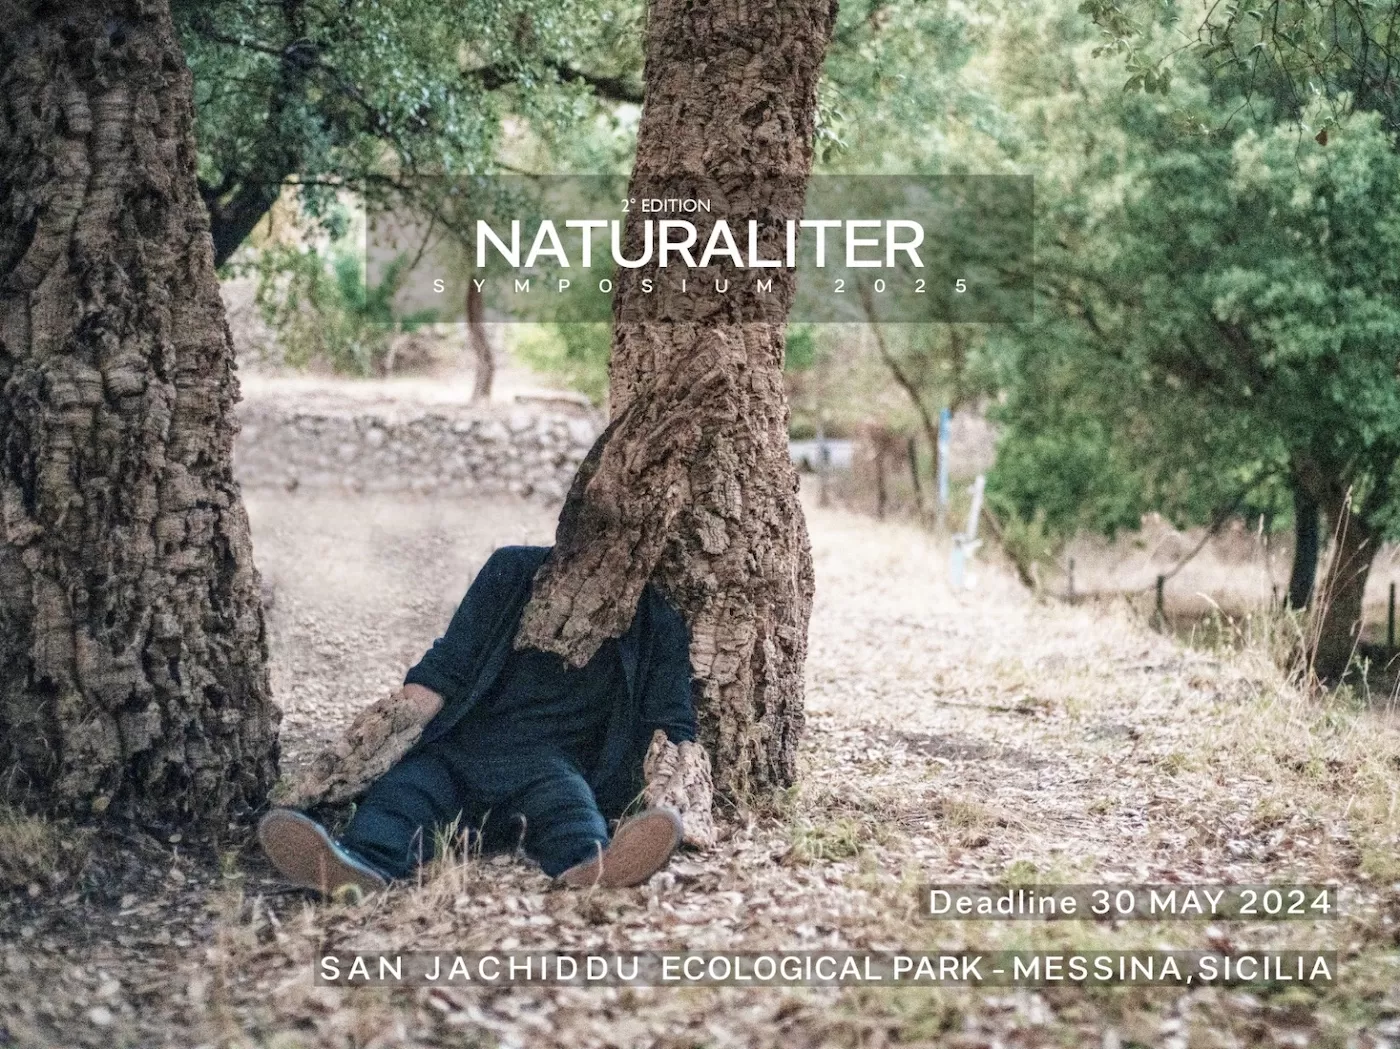 Pildil on inimene, kes istub puu all ja on osaliselt puukoorega kaetud, justkui oleks ta puuga kokku kasvanud. Pildi ülaosas on kirjas "NATURALITER Symposium 2025" ning allpool "Deadline 30 May 2024 / San Jachiddu Ecological Park - Messina, Sicilia".